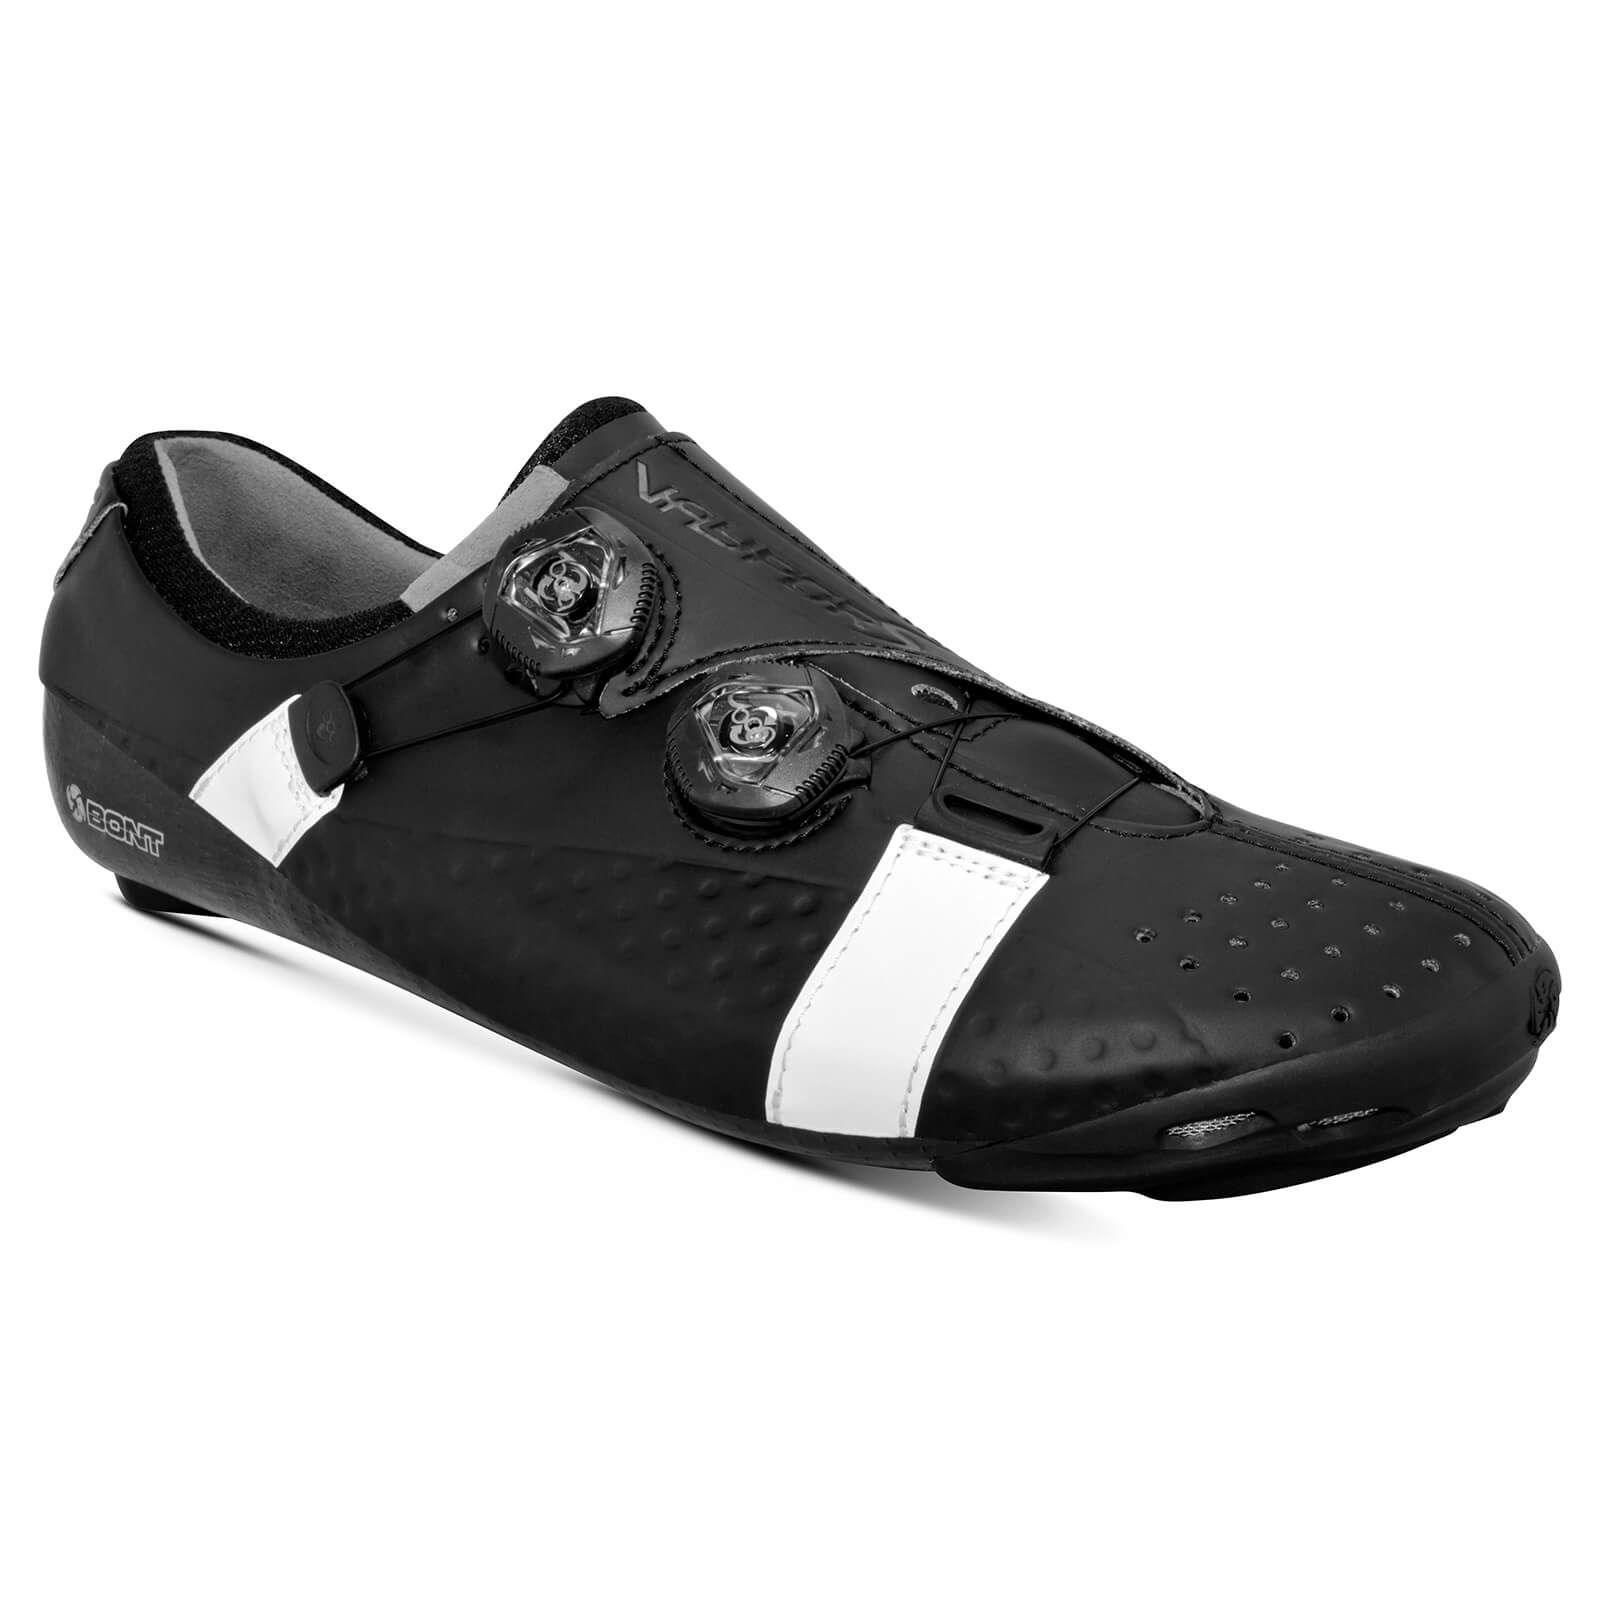 Bont Vaypor S Road Shoes - EU 46 - Standard Fit - Black/White